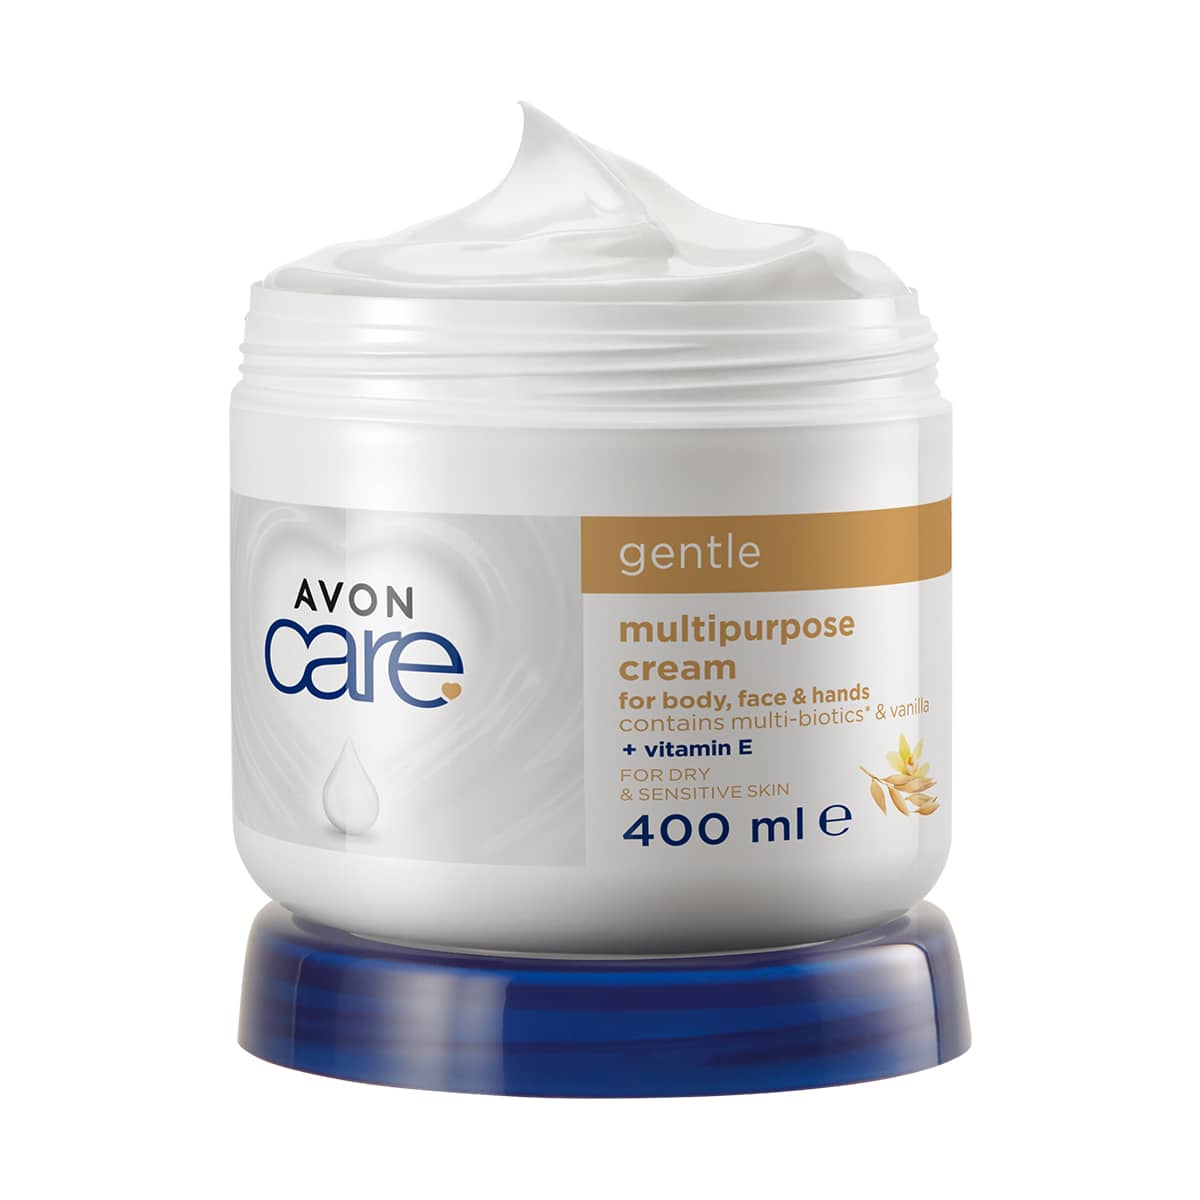 Avon Care Gentle Multipurpose Cream 400ml